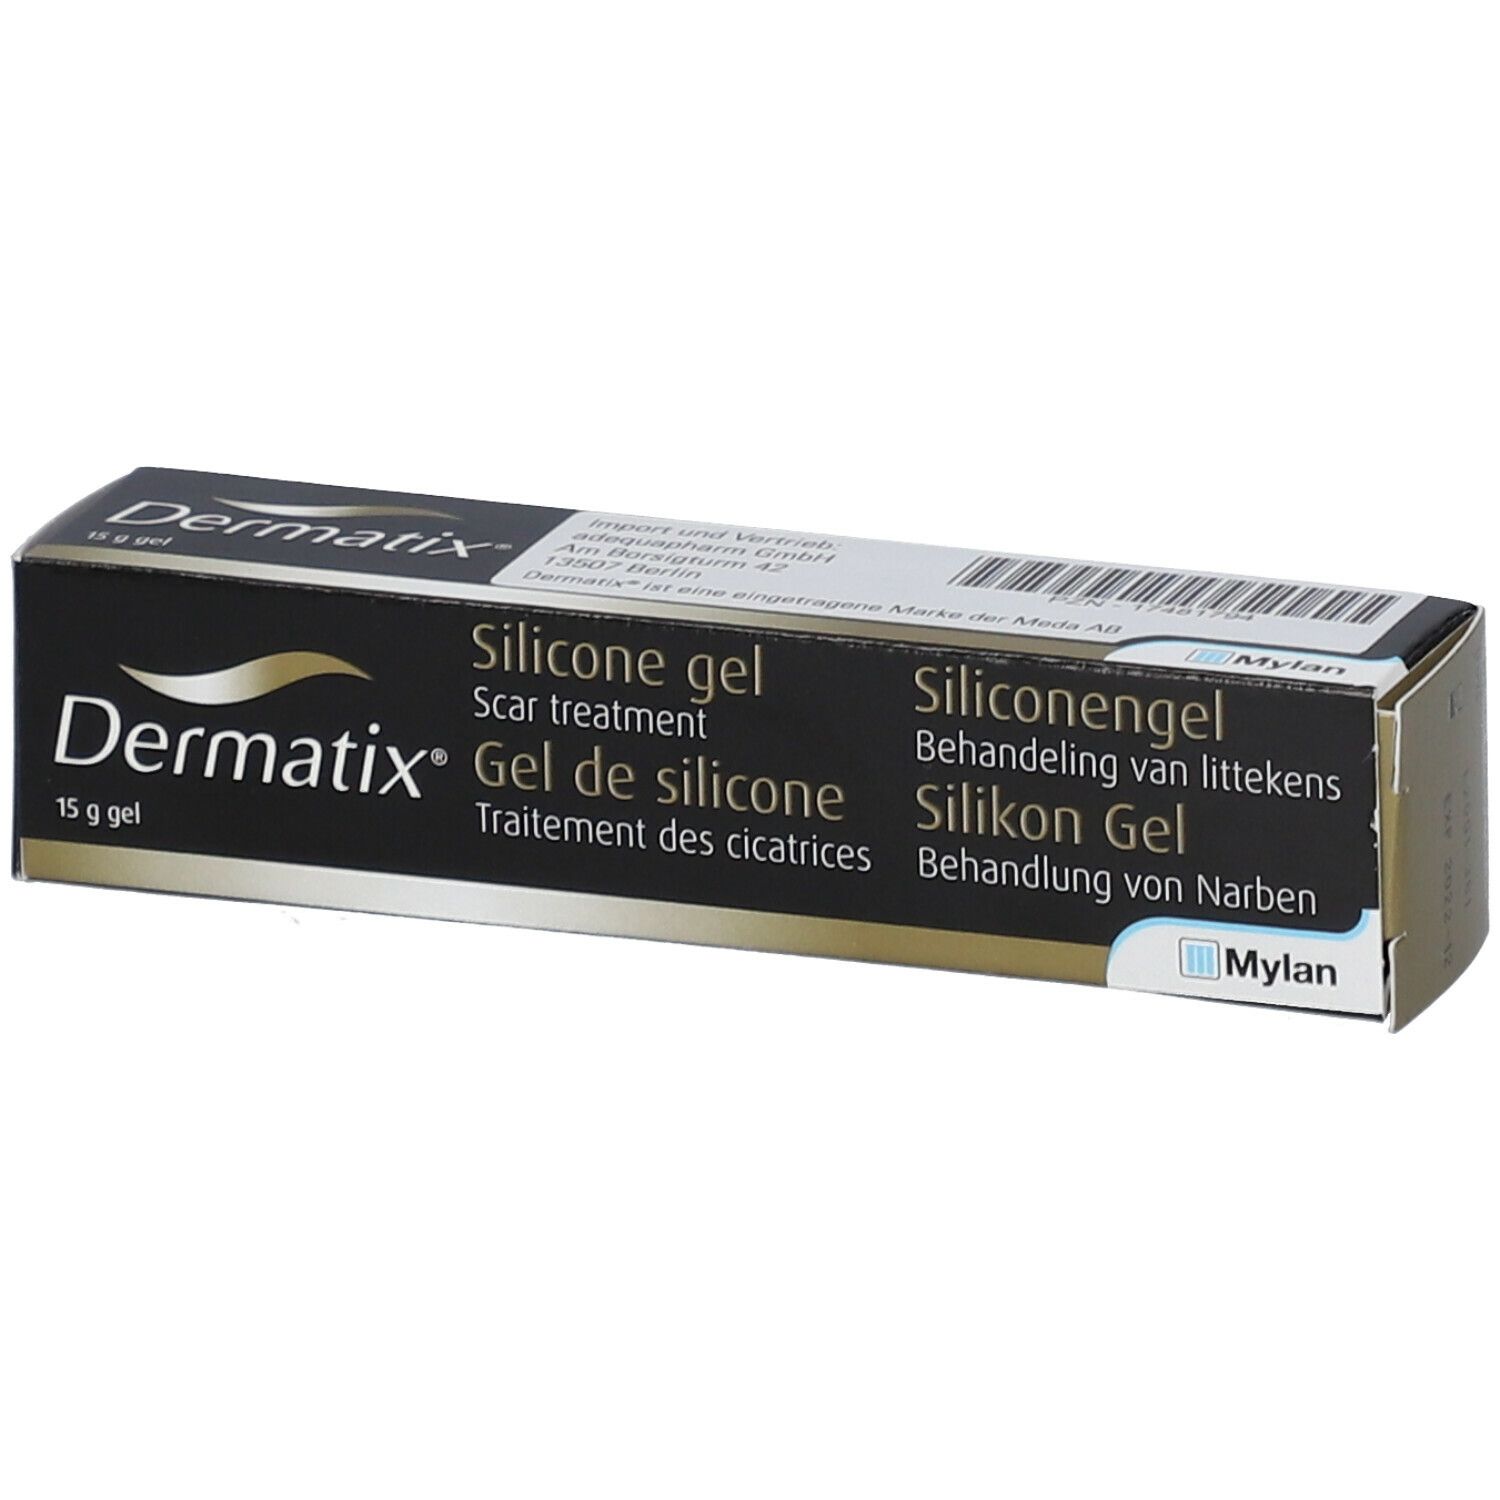 Dermatix Gel